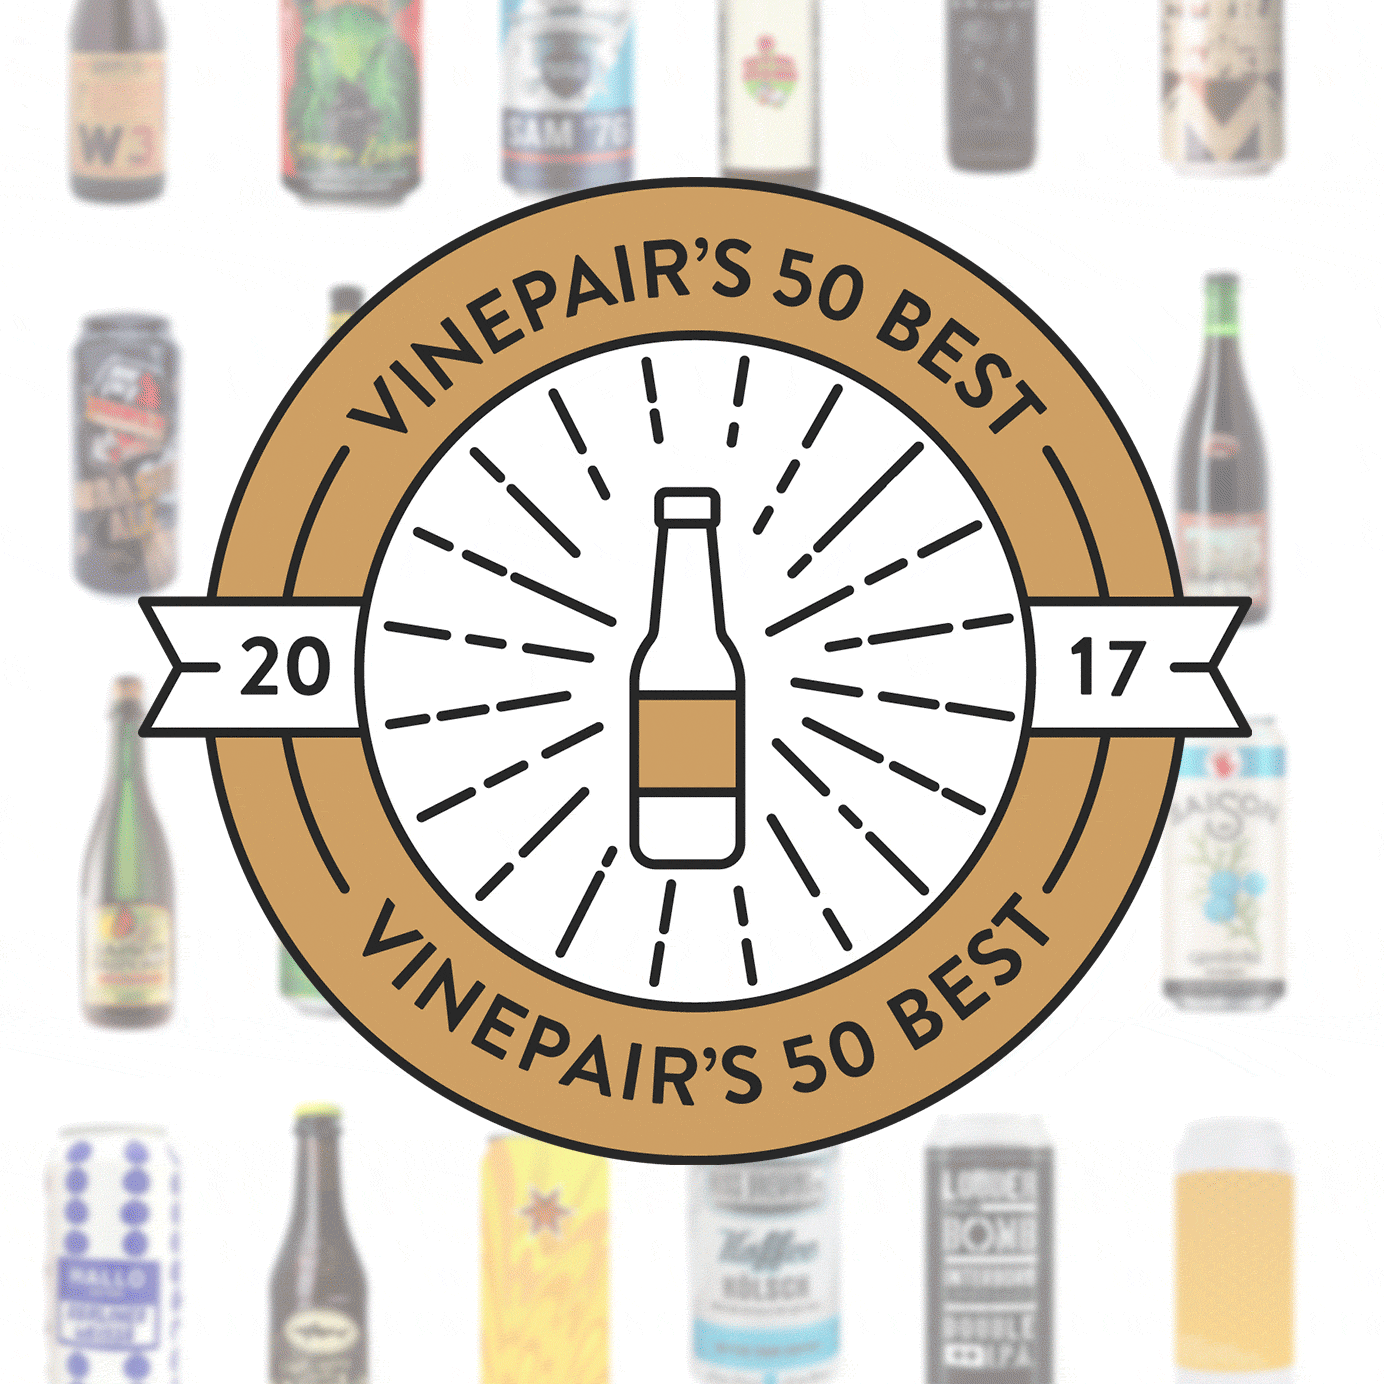 The 50 Best Beers of 2017